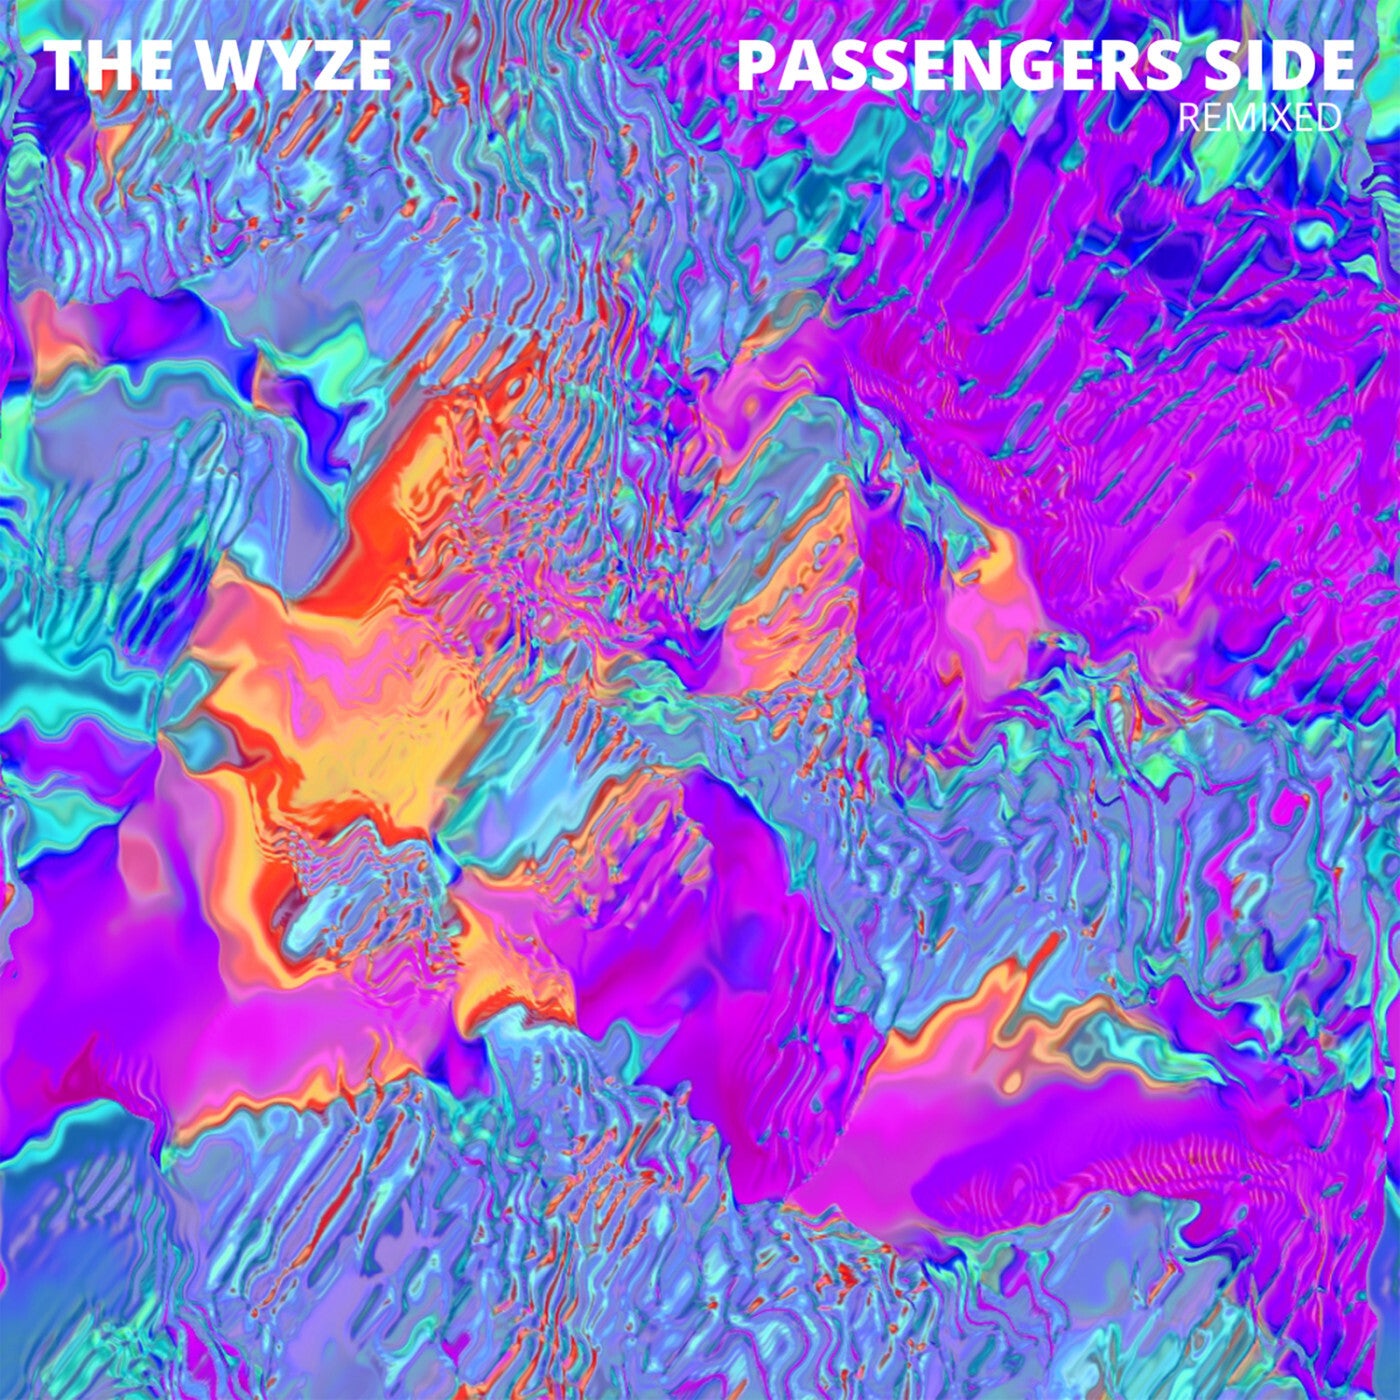 Passengers Side (Watson Remix)